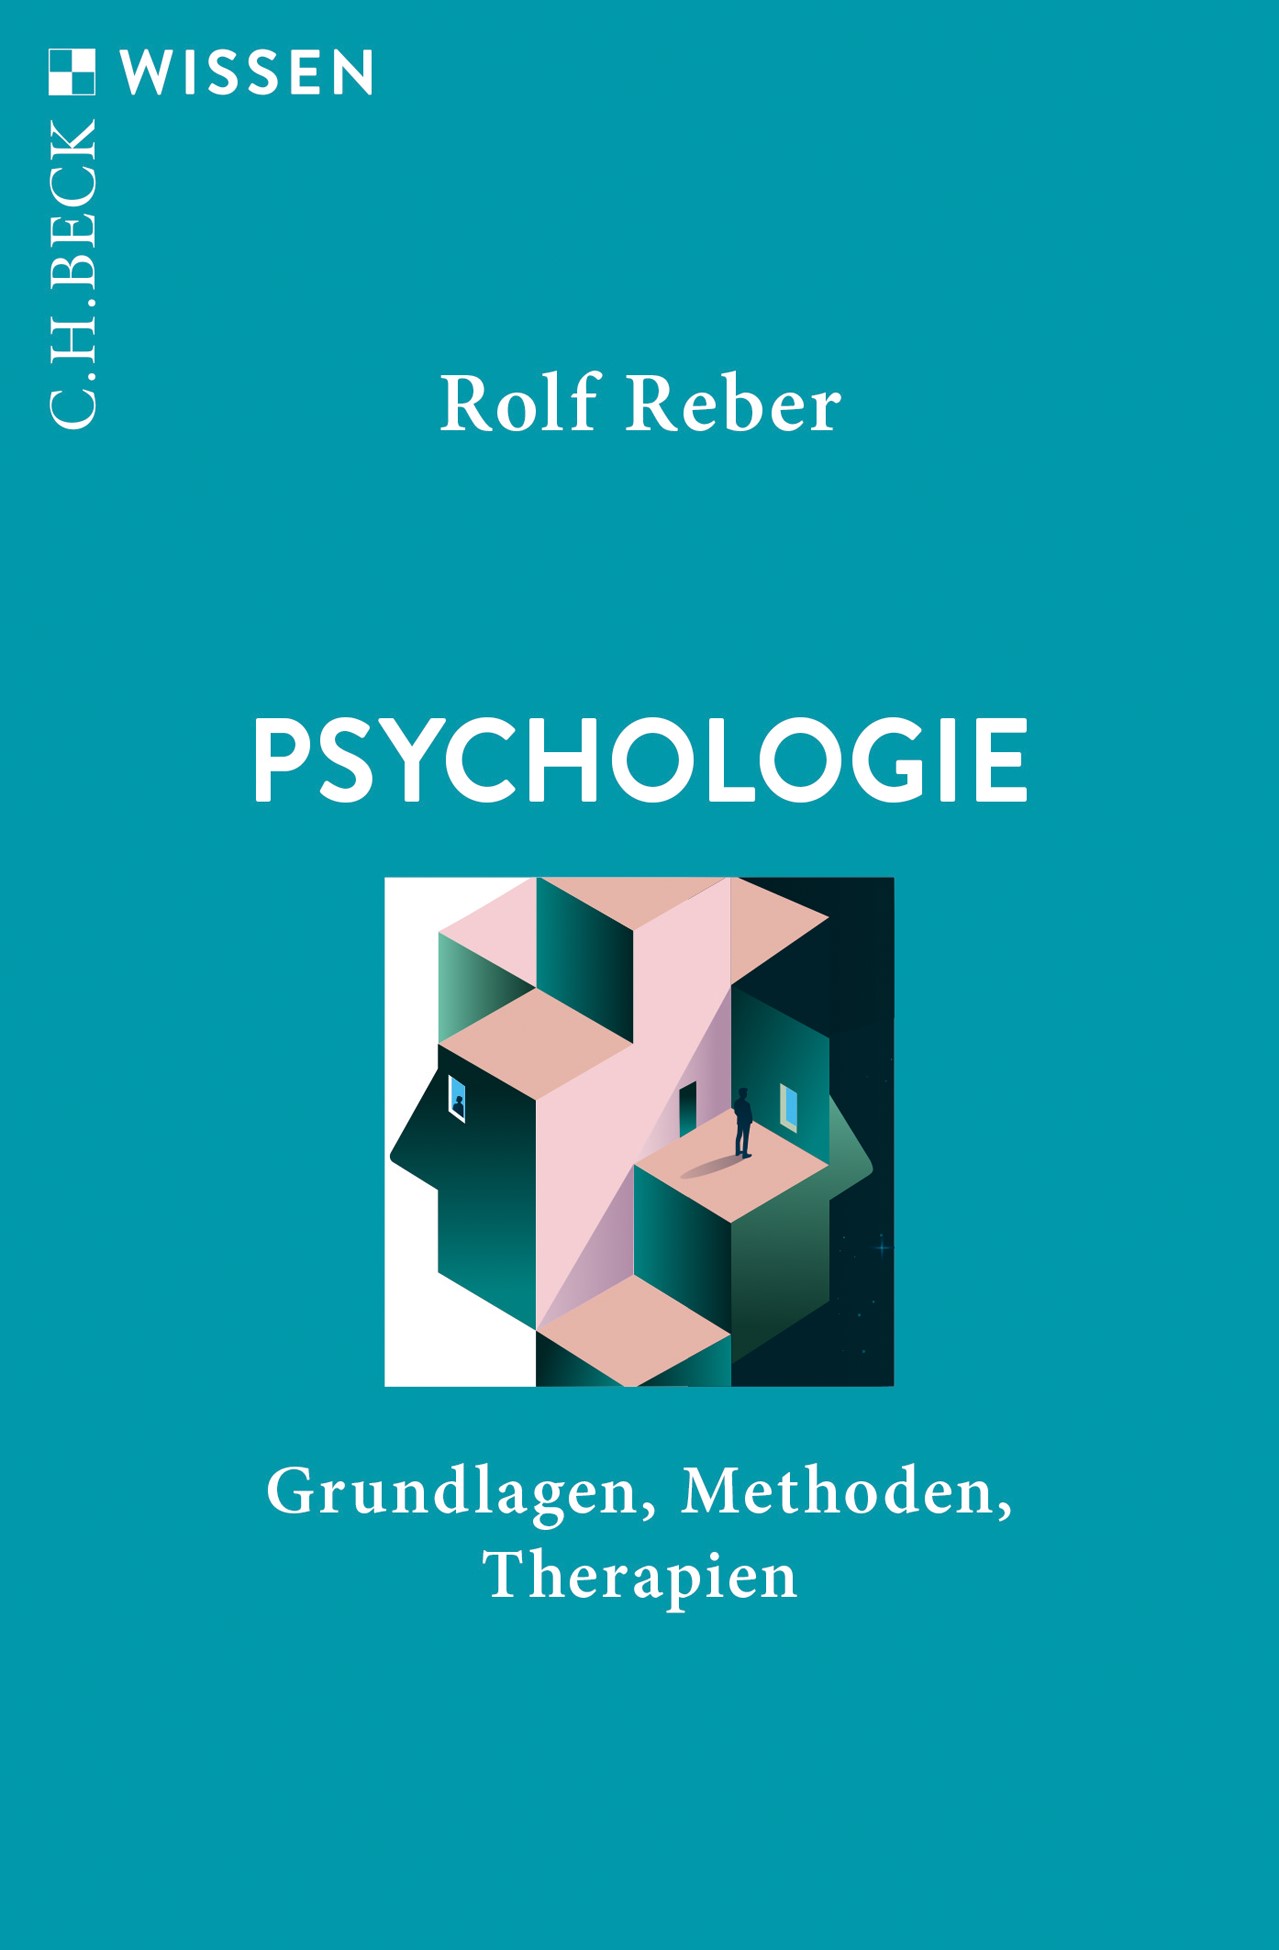 Bokomslag til Rebers bok Psychologie, blå bakgrunn og rosa klosser.